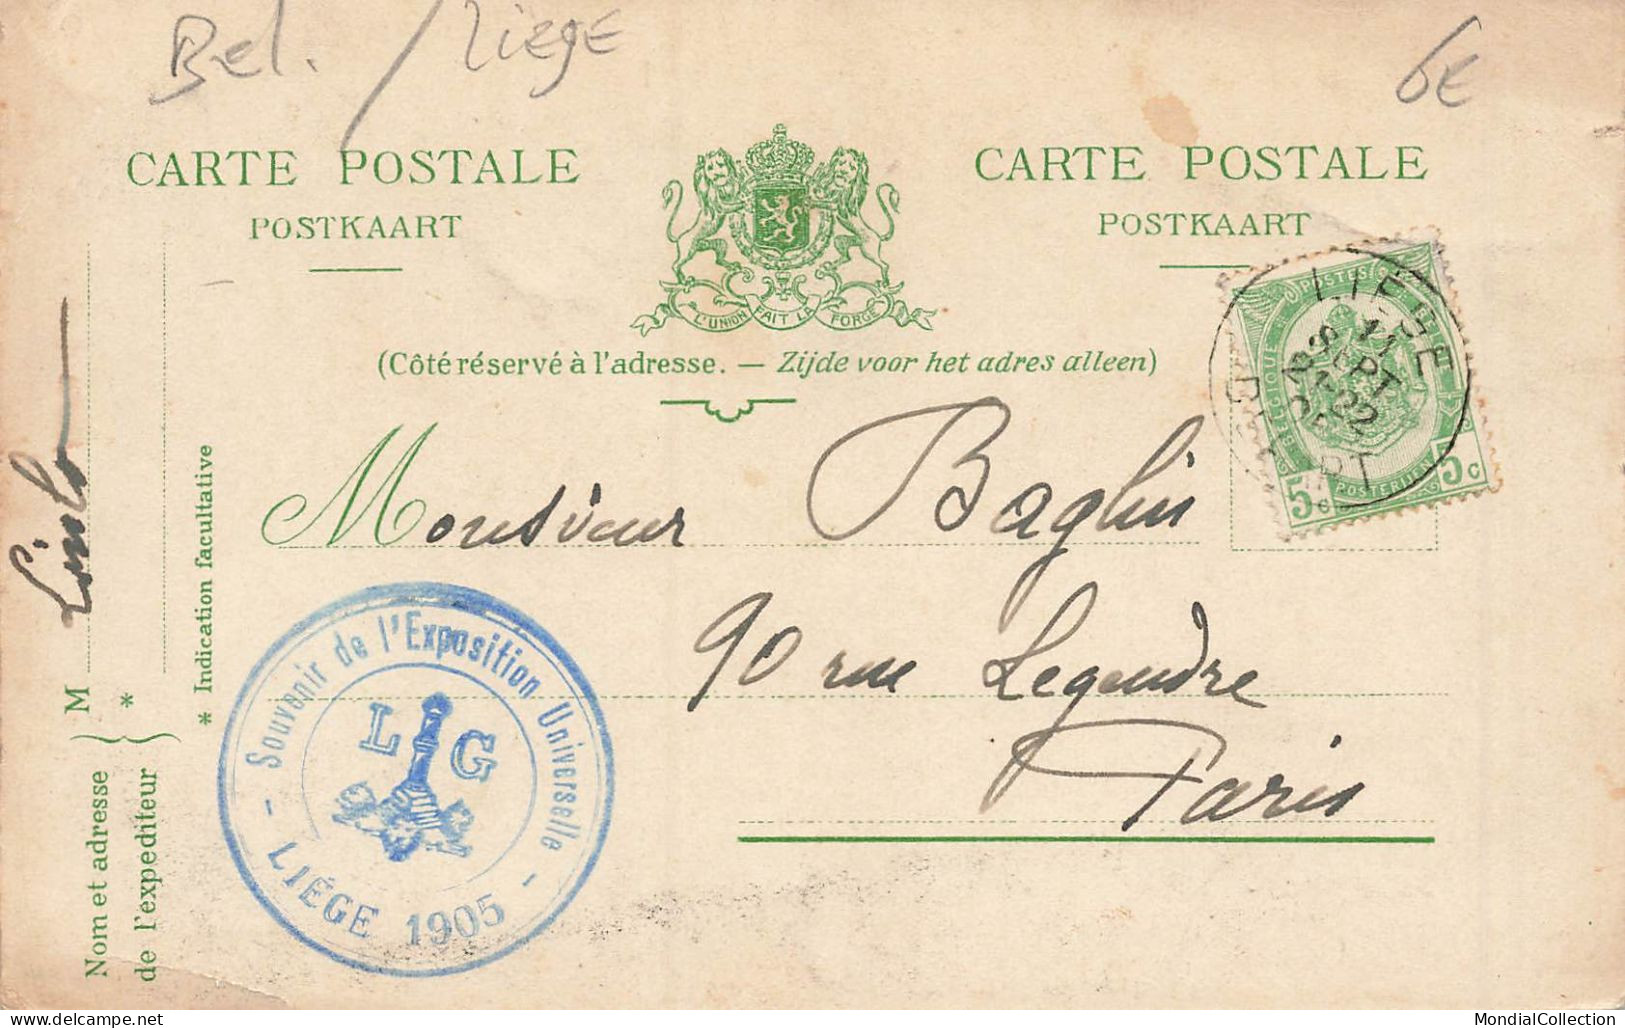 MIKIBP11-061- BELGIQUE LIEGE EXPOSITION 1905 UN RECRUTEMENT MATINAL RETOUR D UN CONGRES PAR ILLUSTRATEUR - Liege